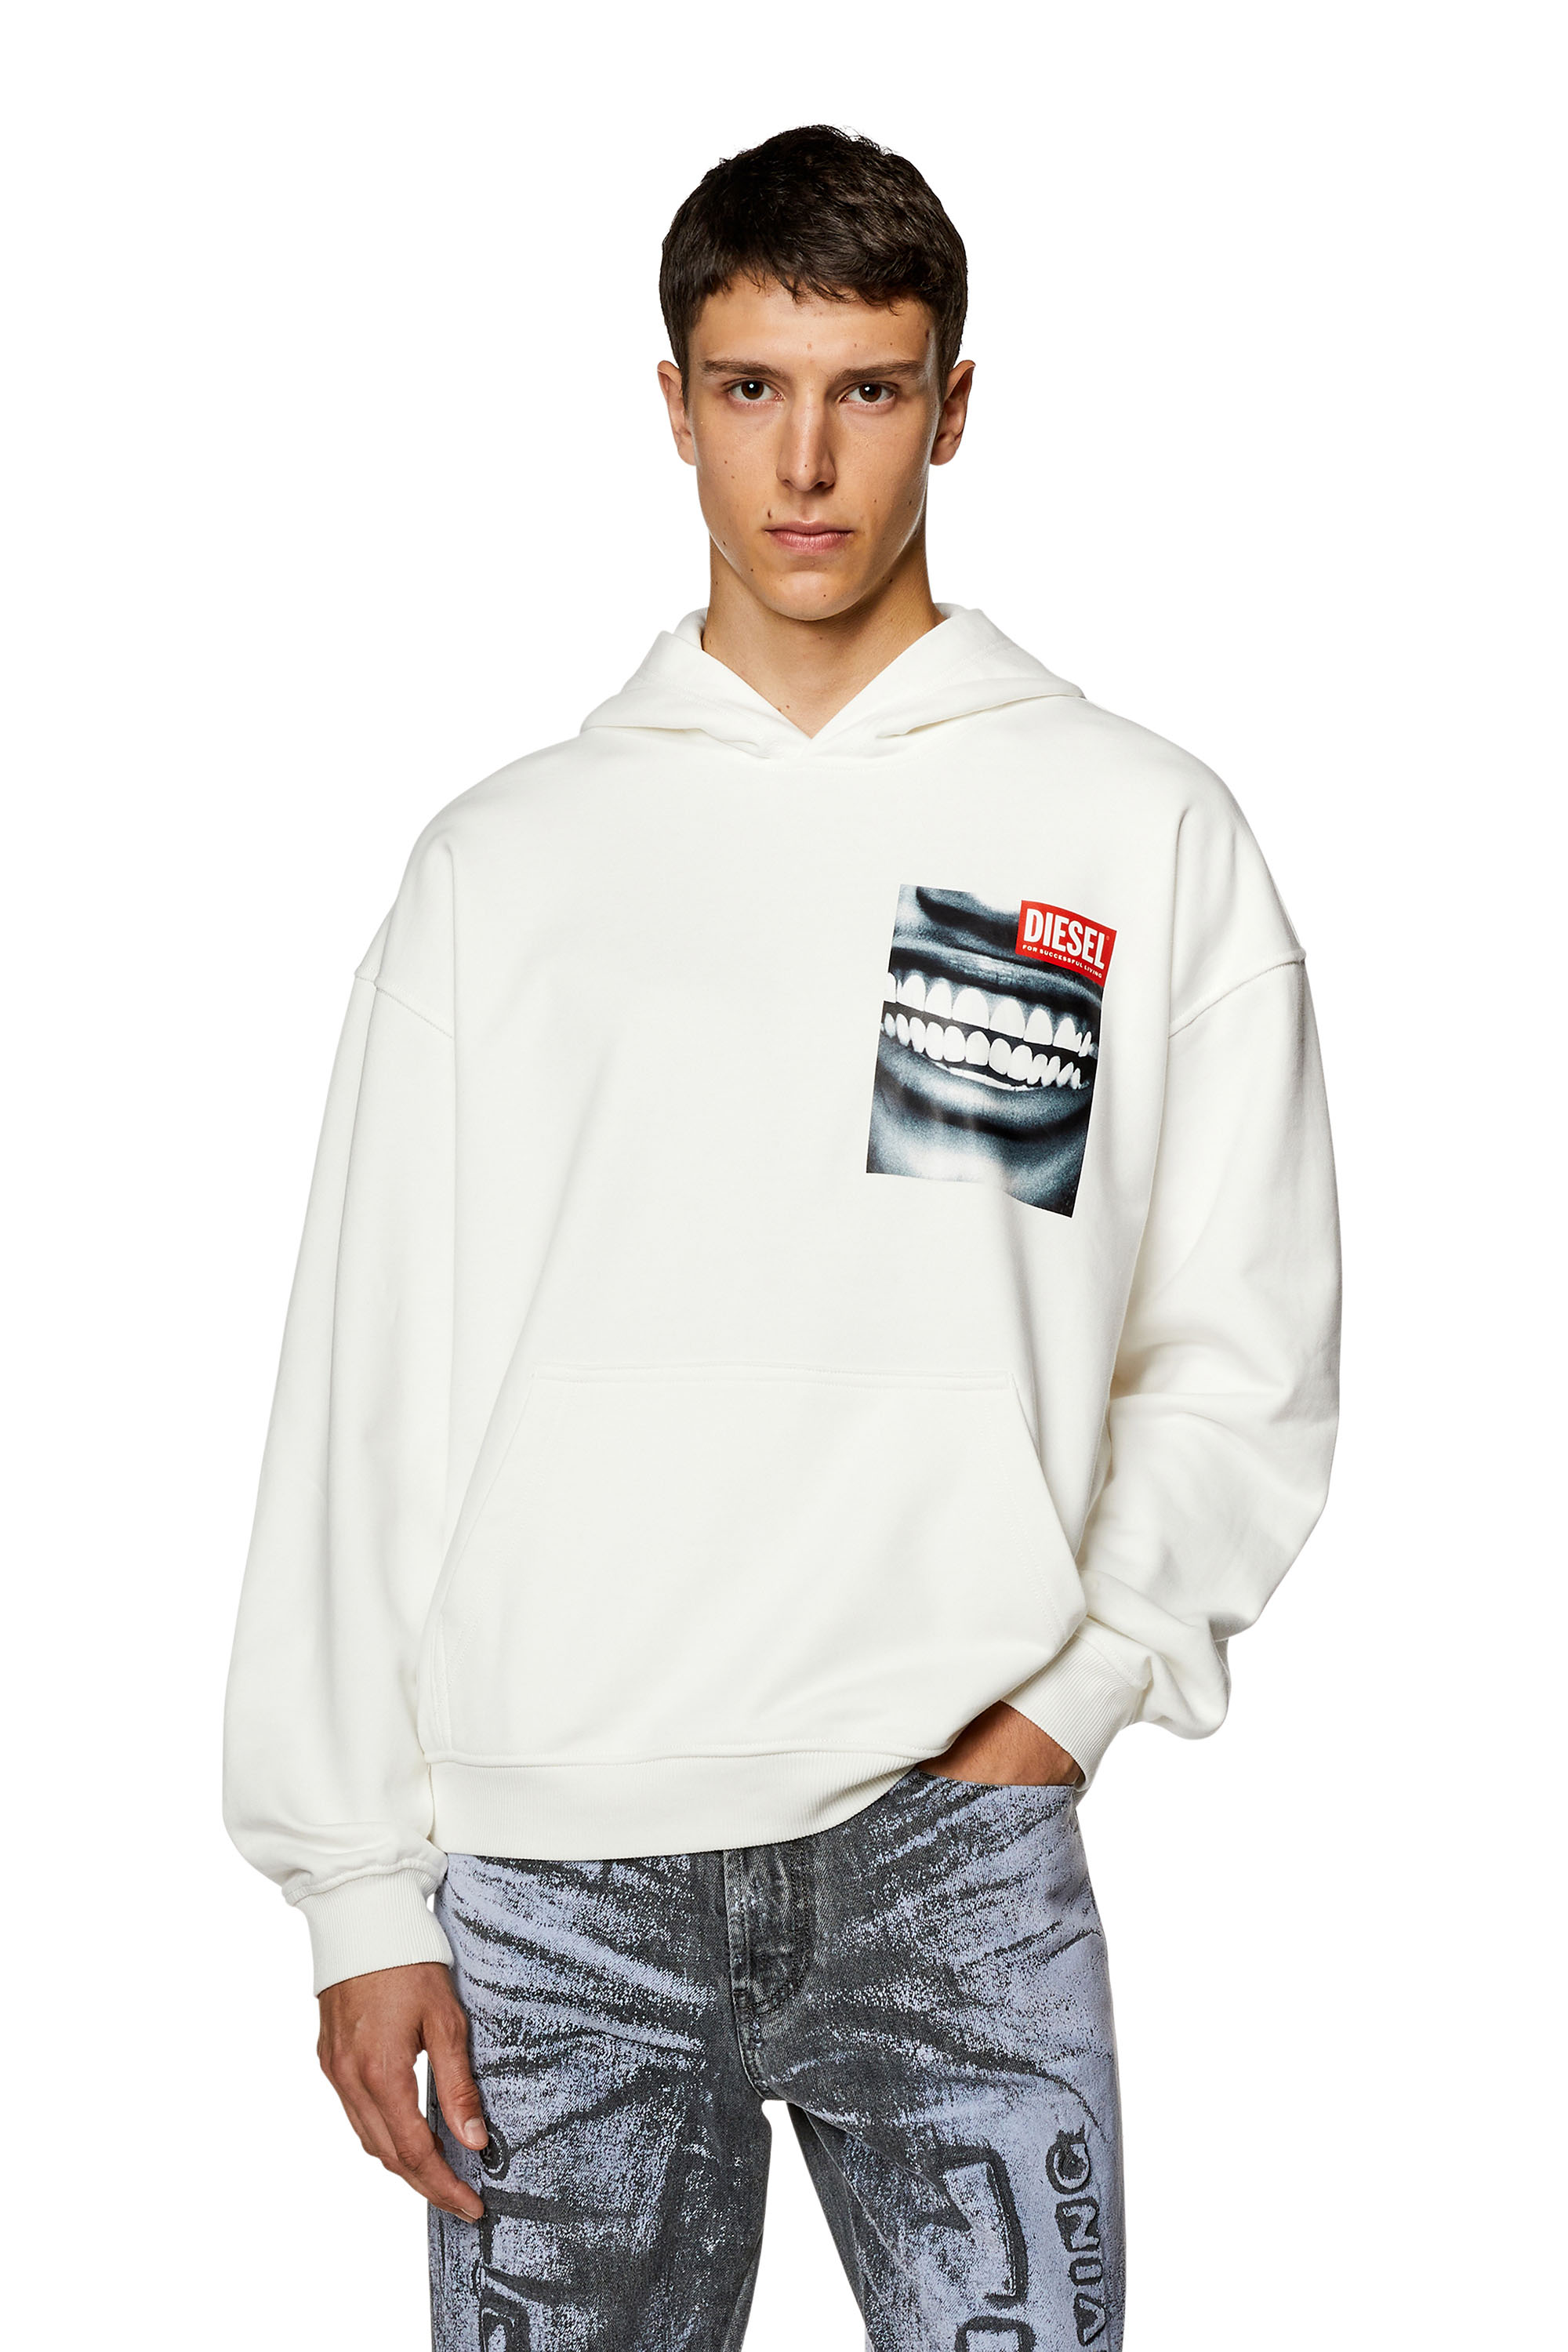 Diesel - Sweat-shirt à capuche avec imprimé Smile en gros plan - Pull Cotton - Homme - Blanc